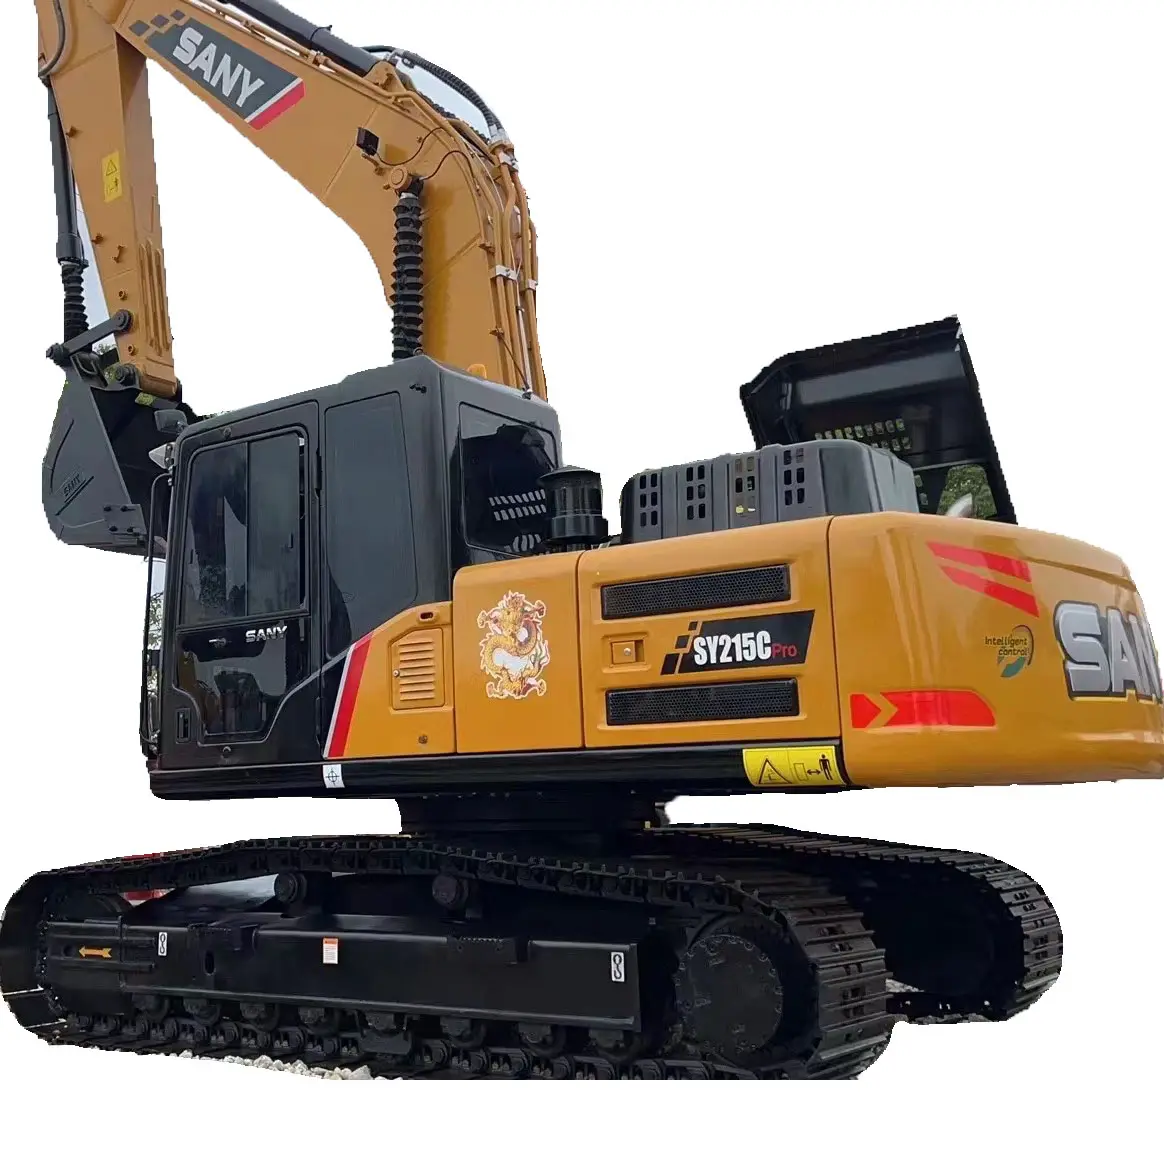 Escavatore usato macchina SANY 215, escavatore di seconda mano di alta qualità e prezzo basso